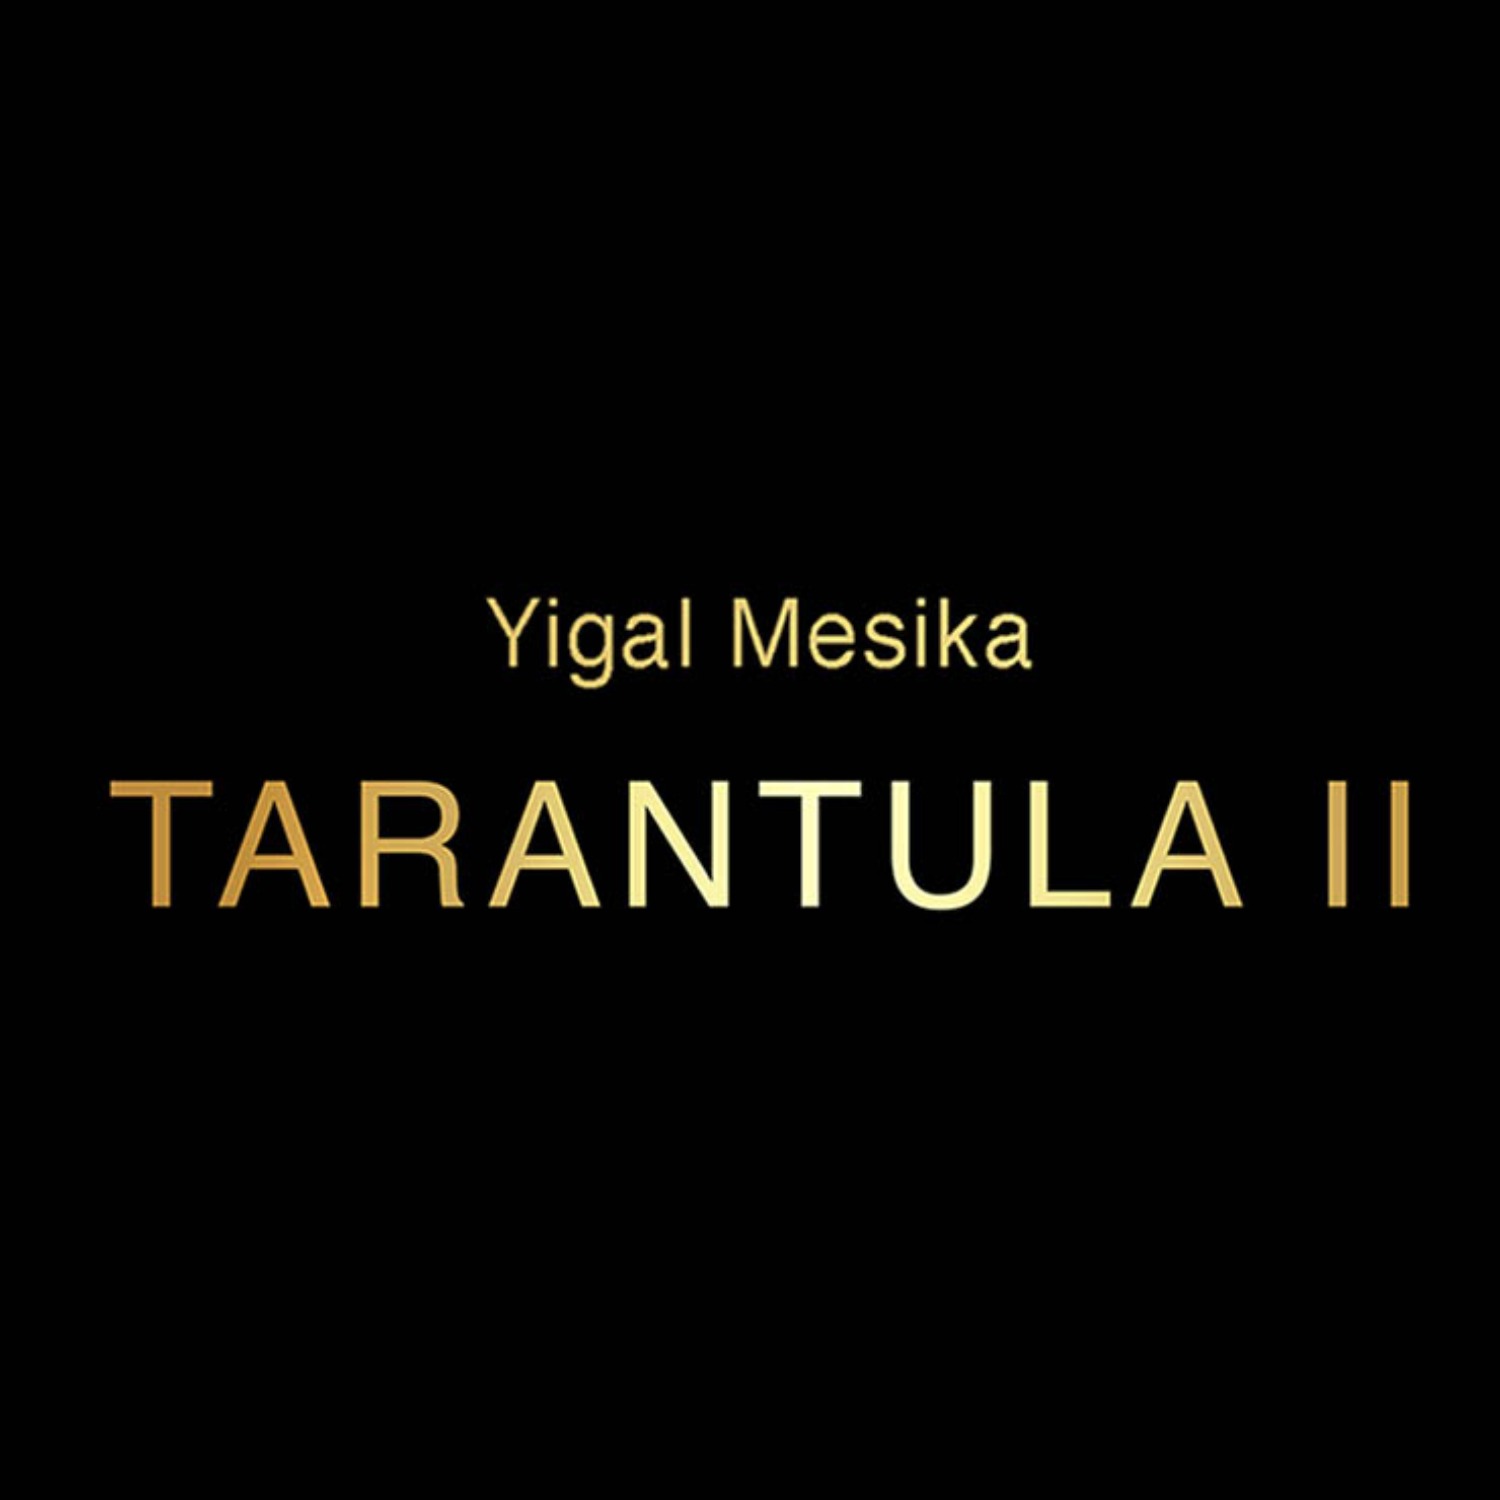 [타란튤라 II ] Tarantula II  by Yigal Mesika - 관객의 반지를 공중부양 시키고 심지어 관객의 손가락으로 이동하여 끼워집니다.